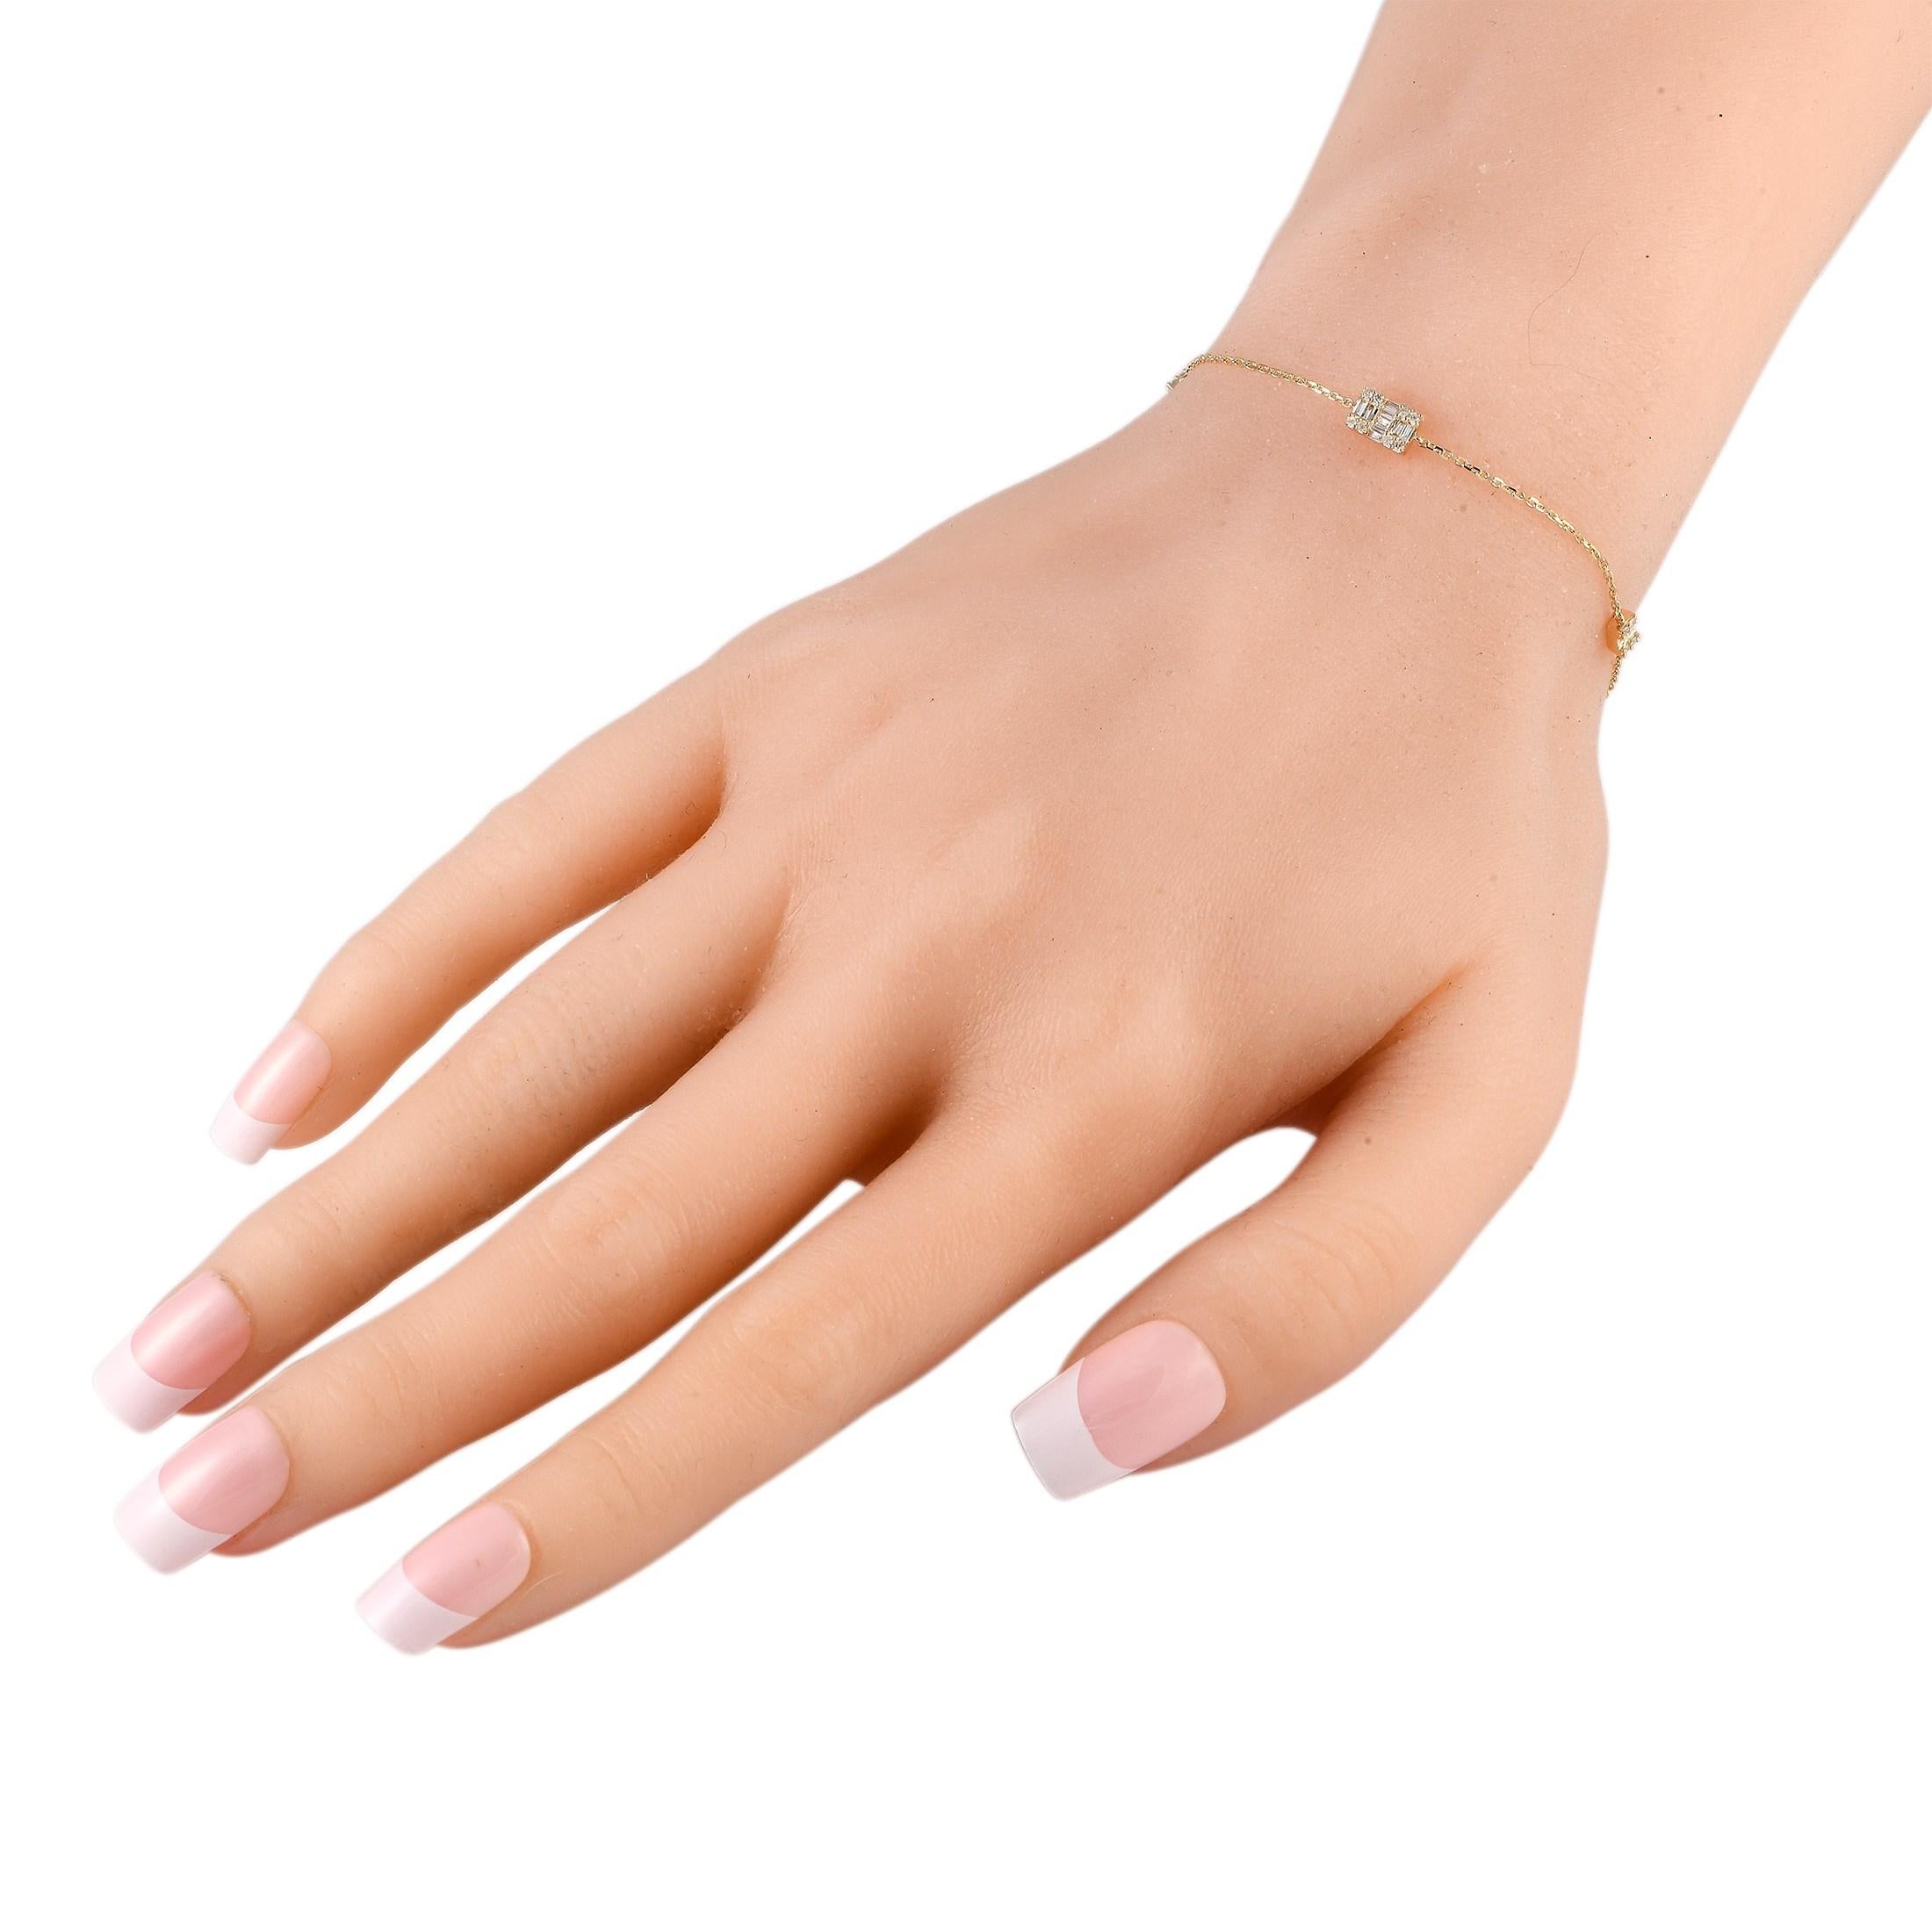 Fabriqué en or jaune 14 carats, ce bracelet délicat est le moyen idéal d'ajouter une touche de luxe à toute occasion. Ce bijou mesure 7,0 cm de long et est orné de diamants d'un poids total de 0,20 carats. Ce bijou est offert à l'état neuf et